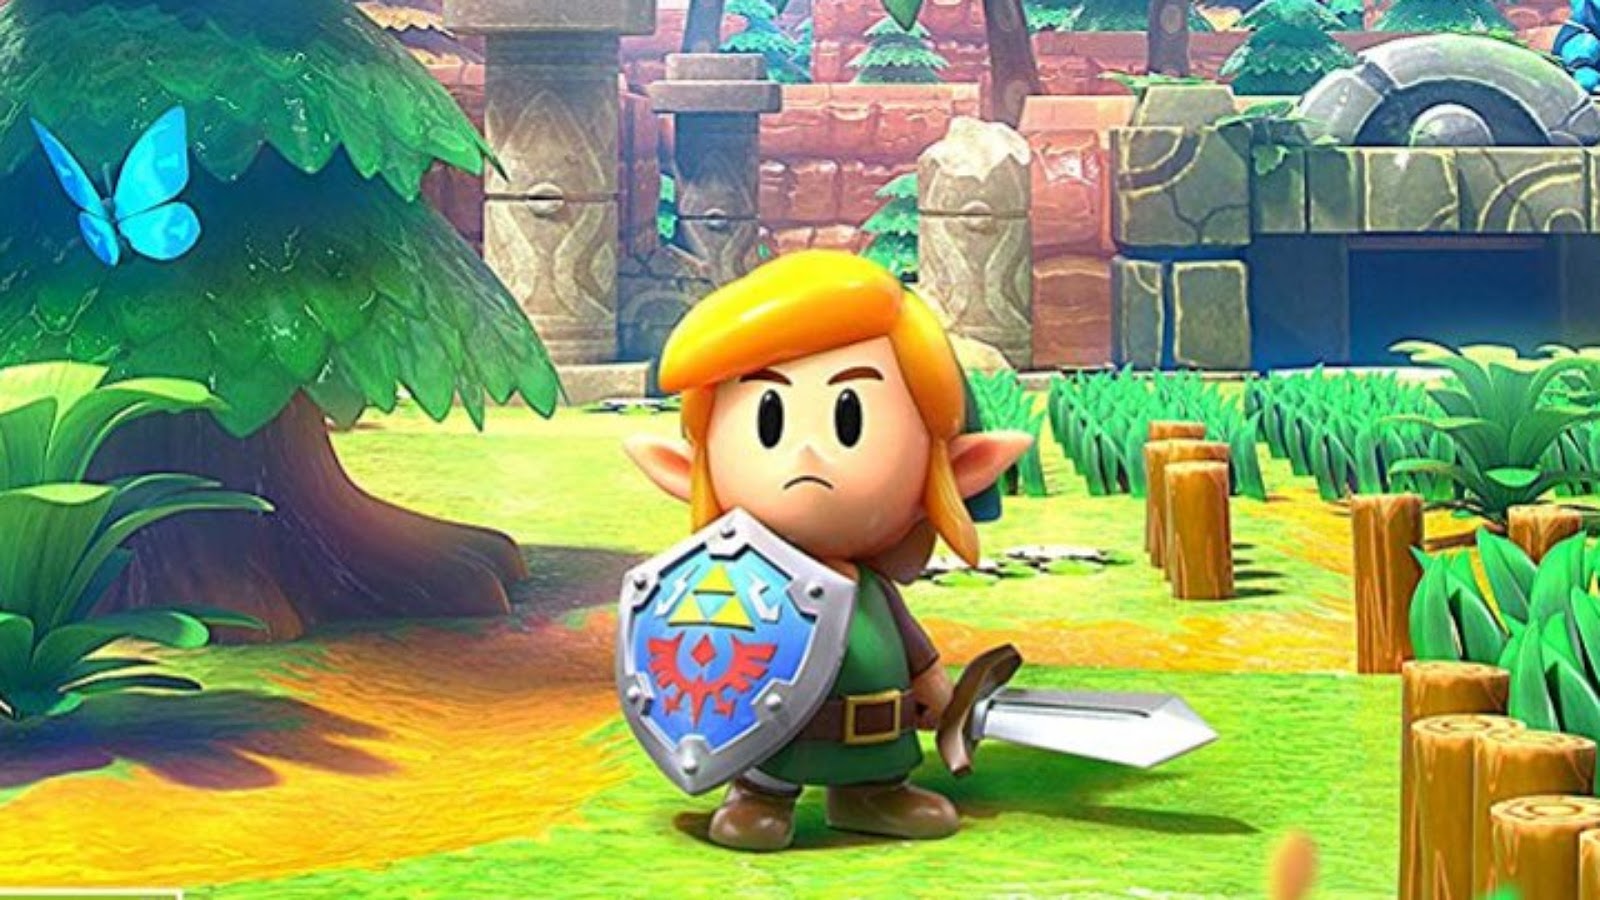 The Legend of Zelda: Link's Awakening - Análise - Um elo com o